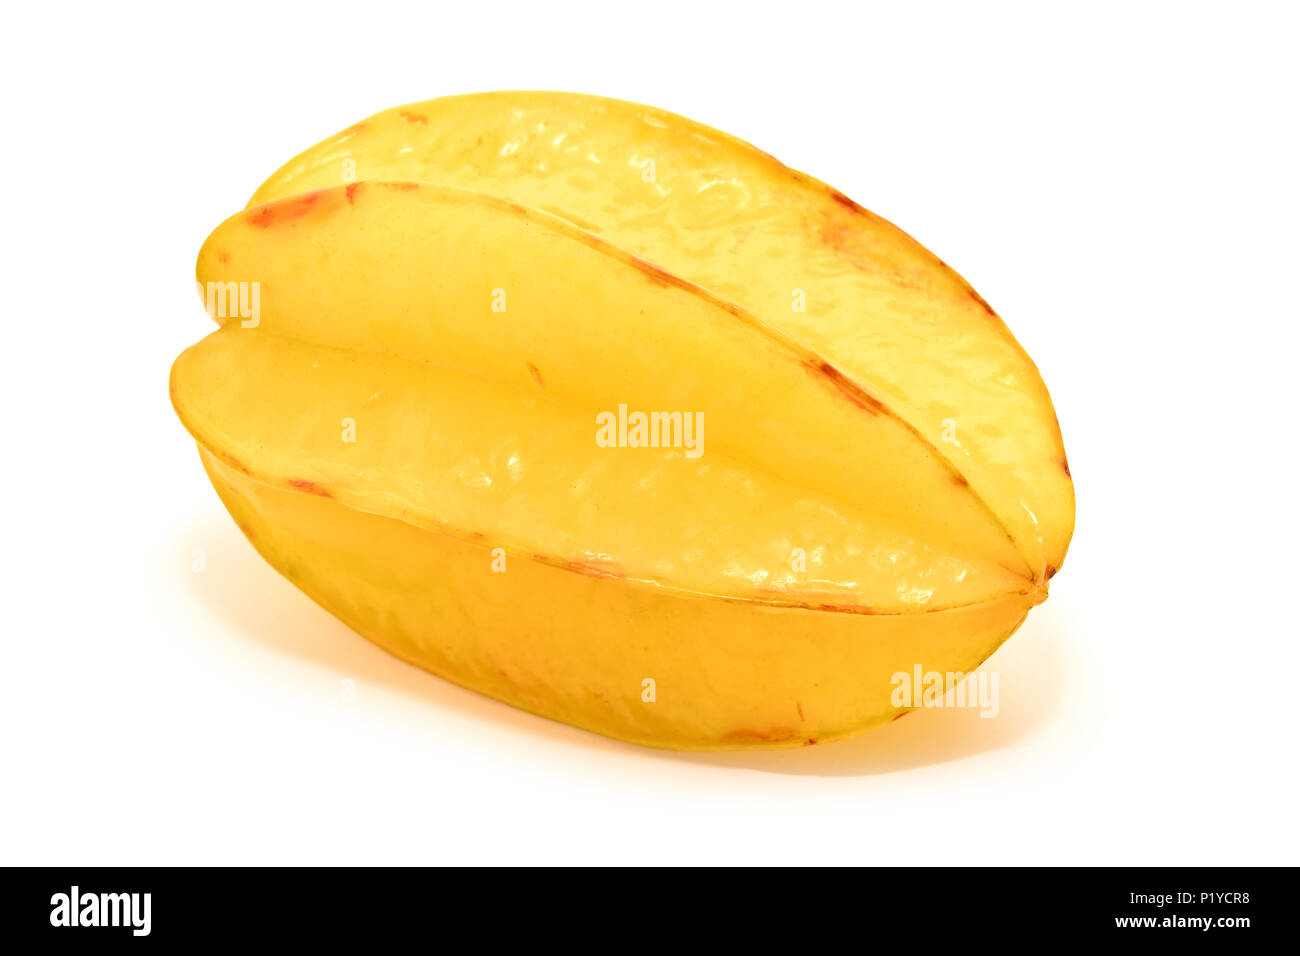 Carambole frutto isolato su sfondo bianco Foto Stock